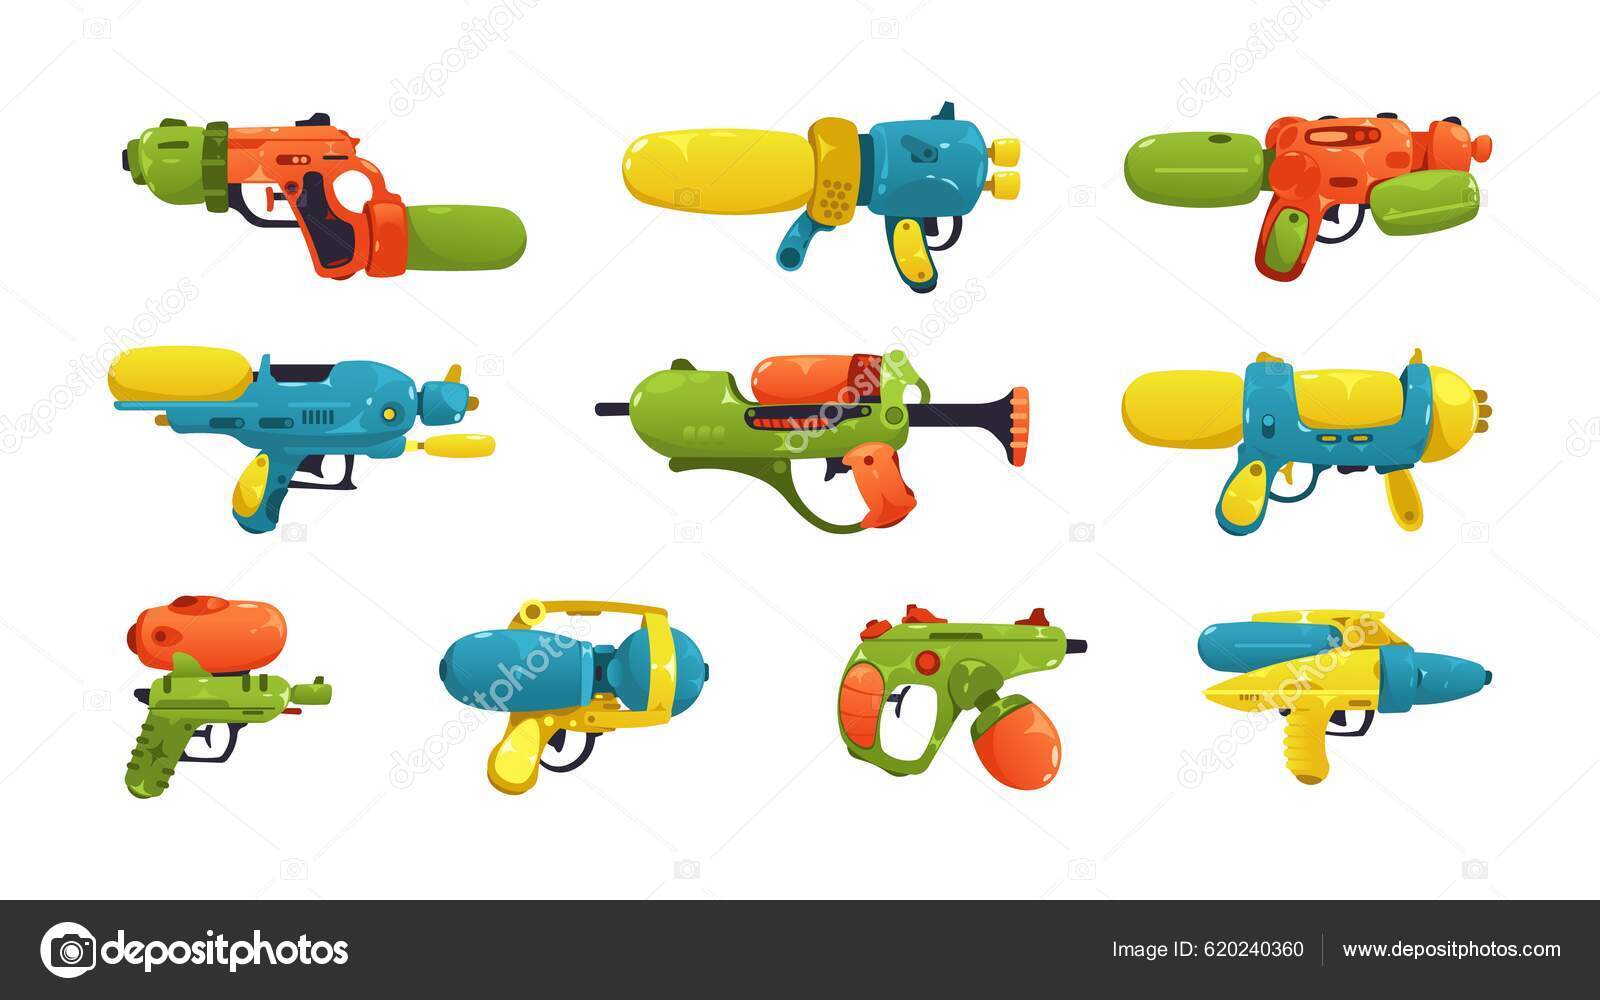 Pistolas De Água. Brinquedos De Armas Para Crianças. Pistola De